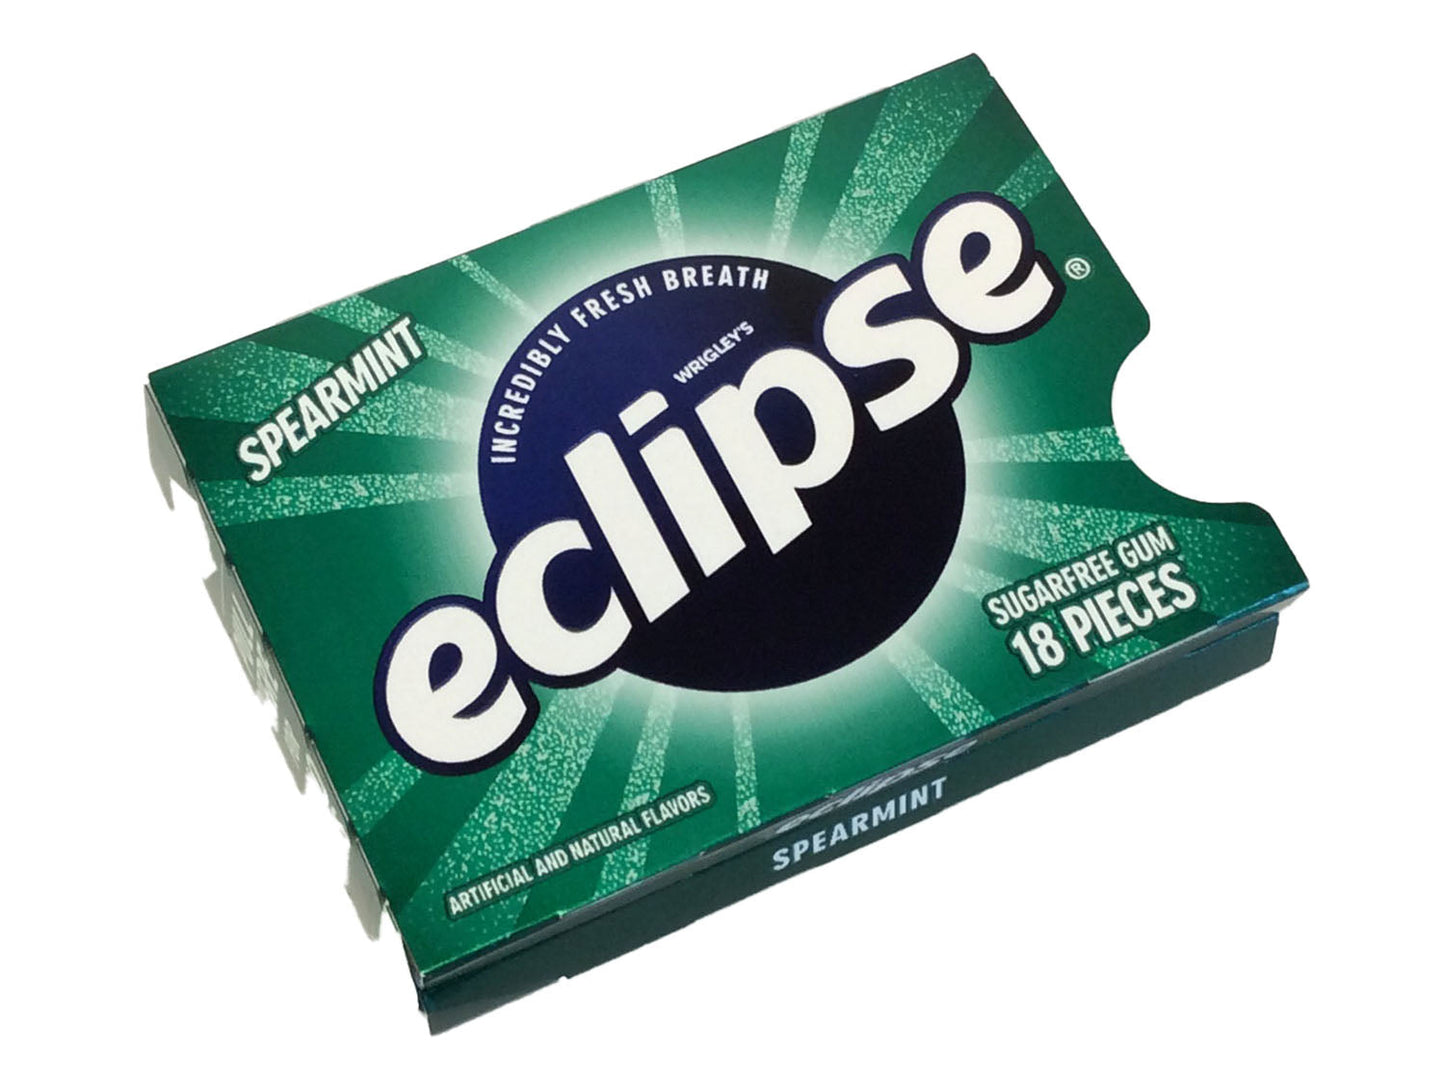 Does Eclipse Gum Have Aspartame